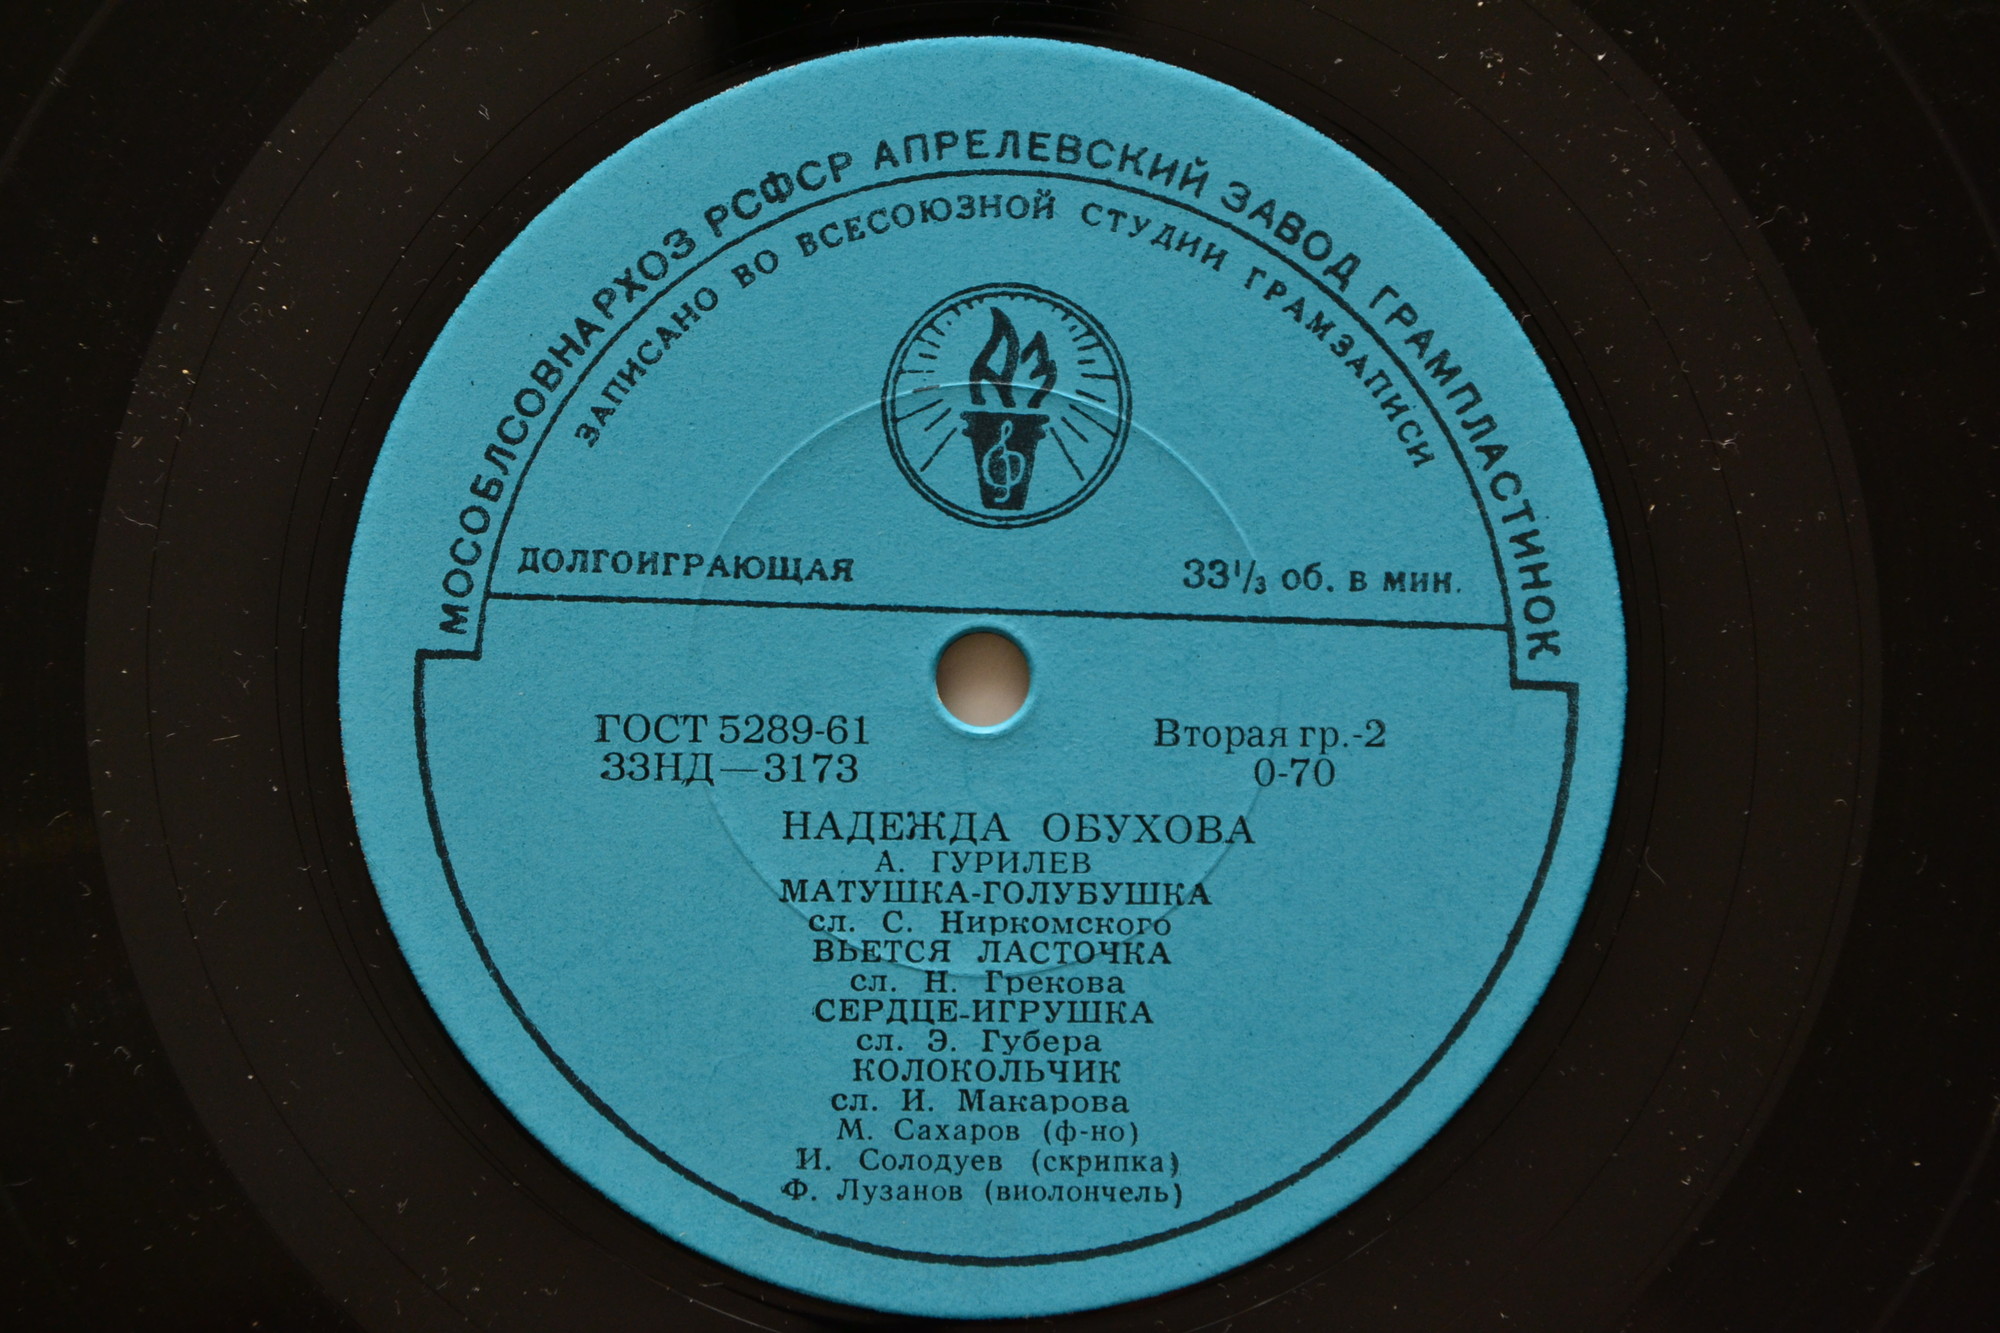 Надежда ОБУХОВА (меццо-сопрано, 1886-1960) "Романсы и песни А. Варламова и А. Гурилёва"